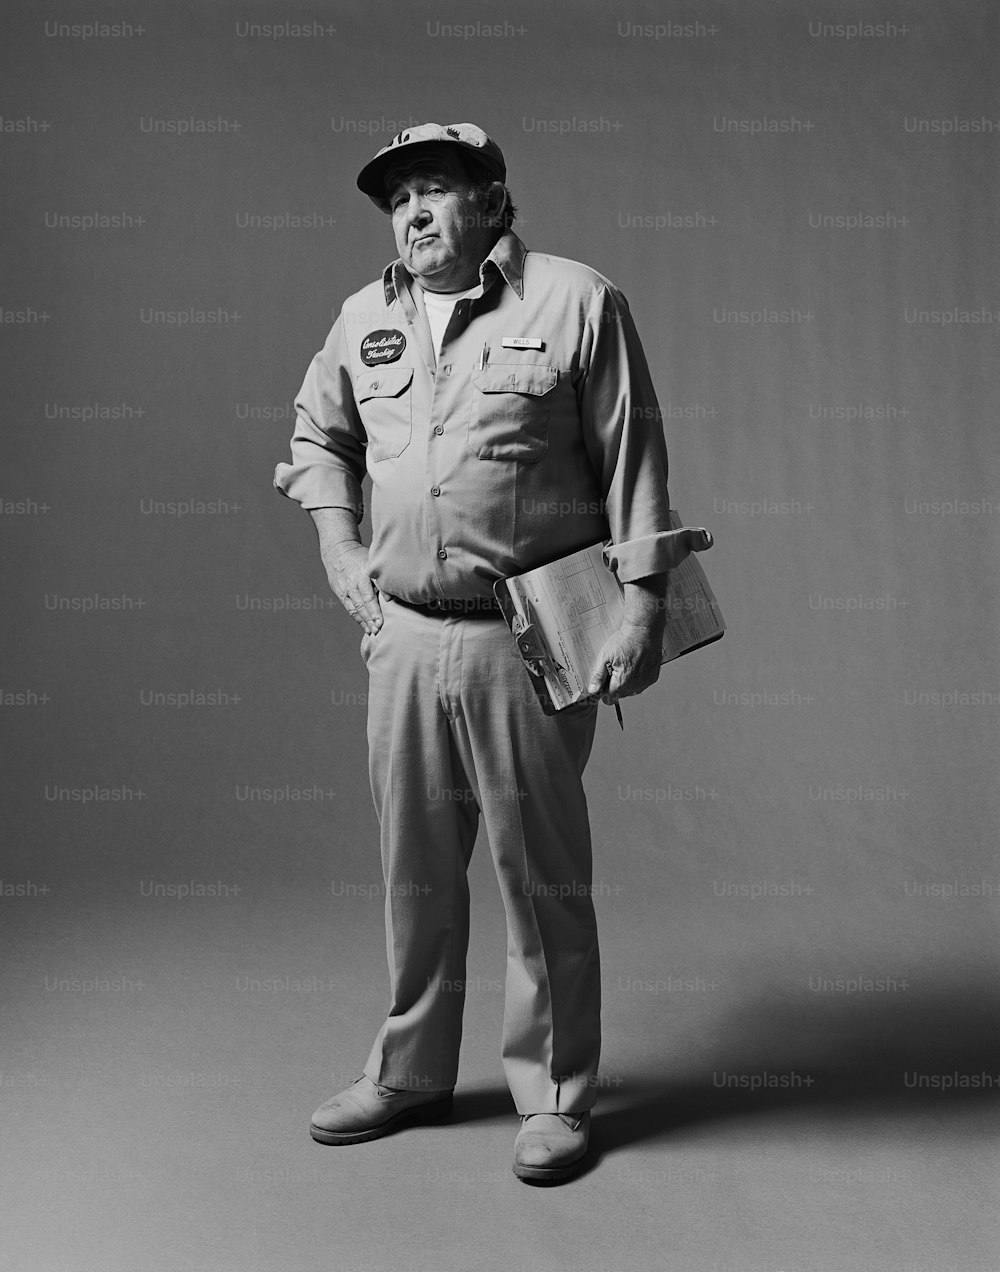 Una foto en blanco y negro de un hombre en uniforme